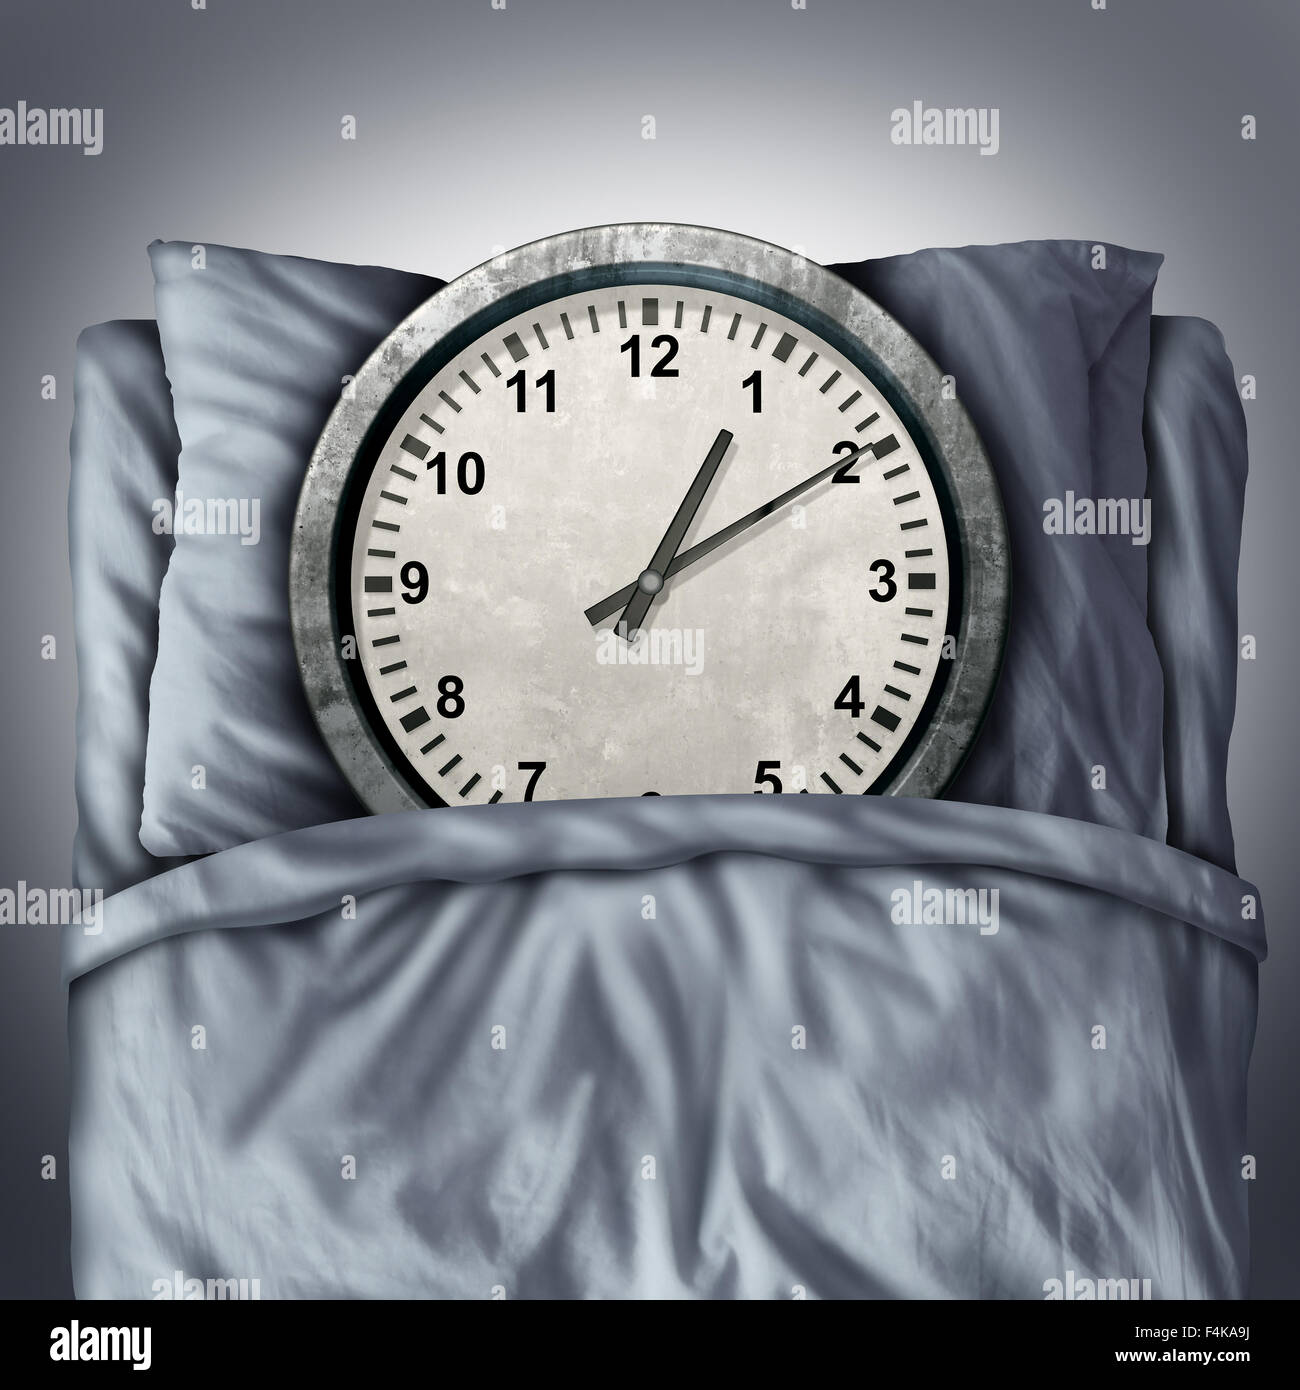 Immer genügend Schlaf-Konzept oder schlafen Probleme Symbol wie eine Uhr im Bett auf einem Kissen liegend, als Metapher für Ruhe und Entspannung für einen gesunden Geist und Körper oder Termin Zeitplan Stress benötigt. Stockfoto